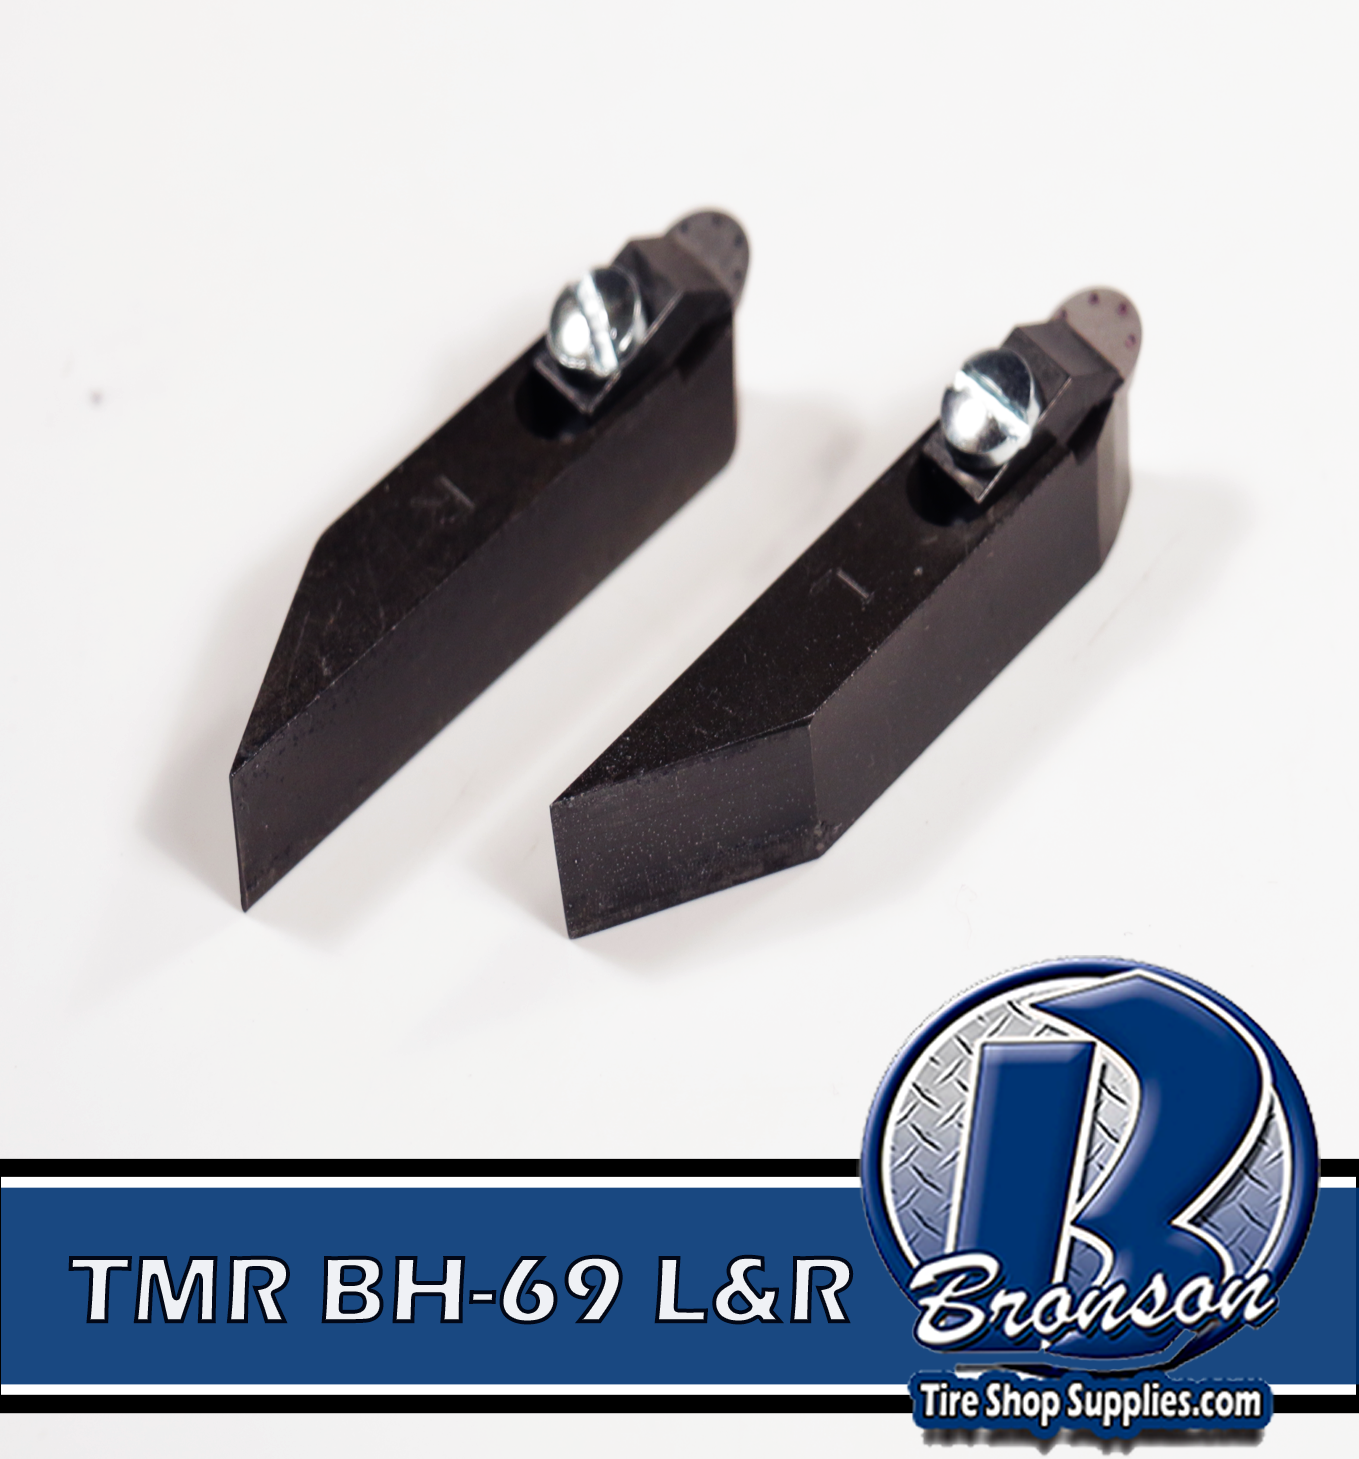 TMR BH-69 L&R Positive Ra